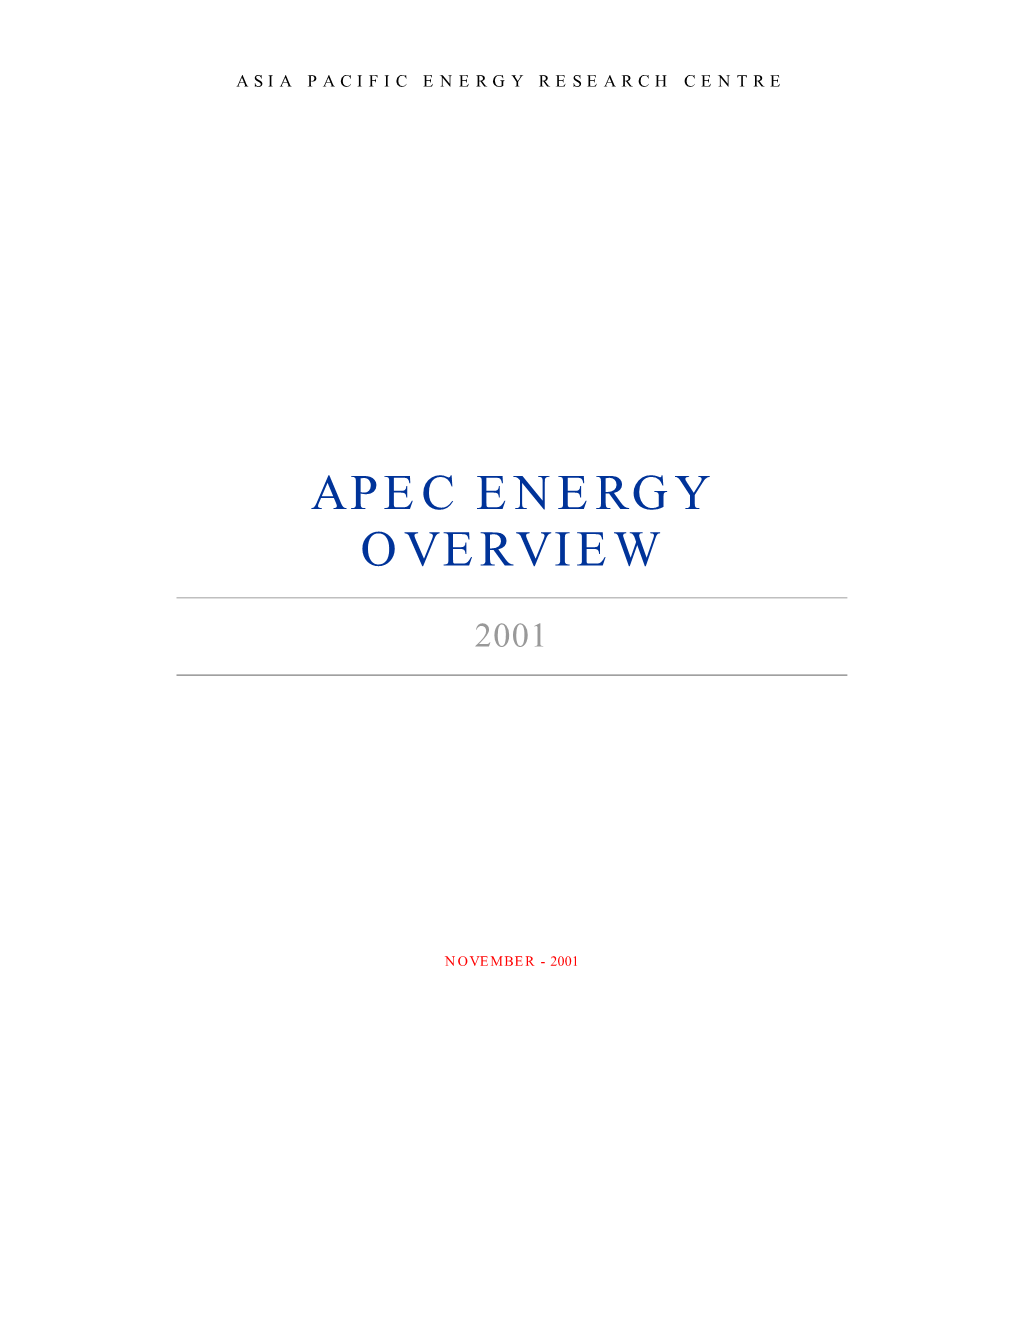 APEC Energy Overview 2001